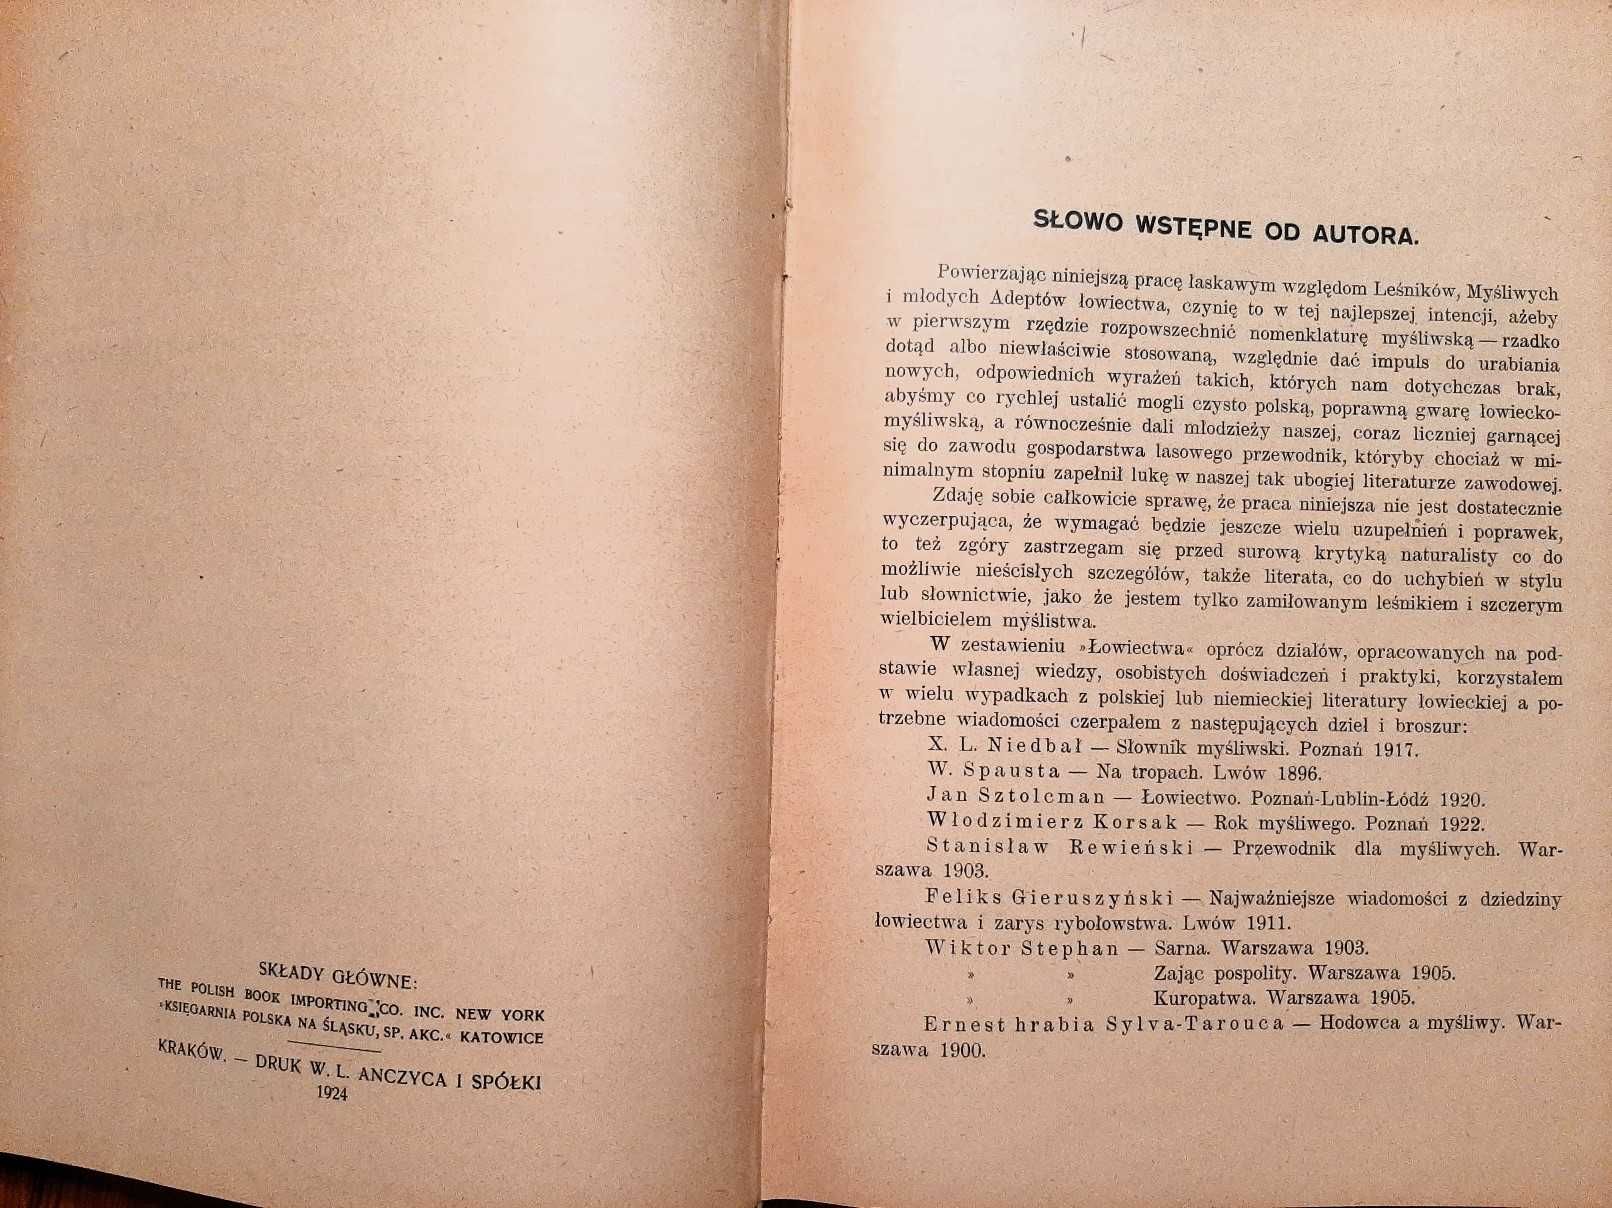 Łowiectwo – Wiesław Krawczyński, wydanie 1924 r. – unikatowe